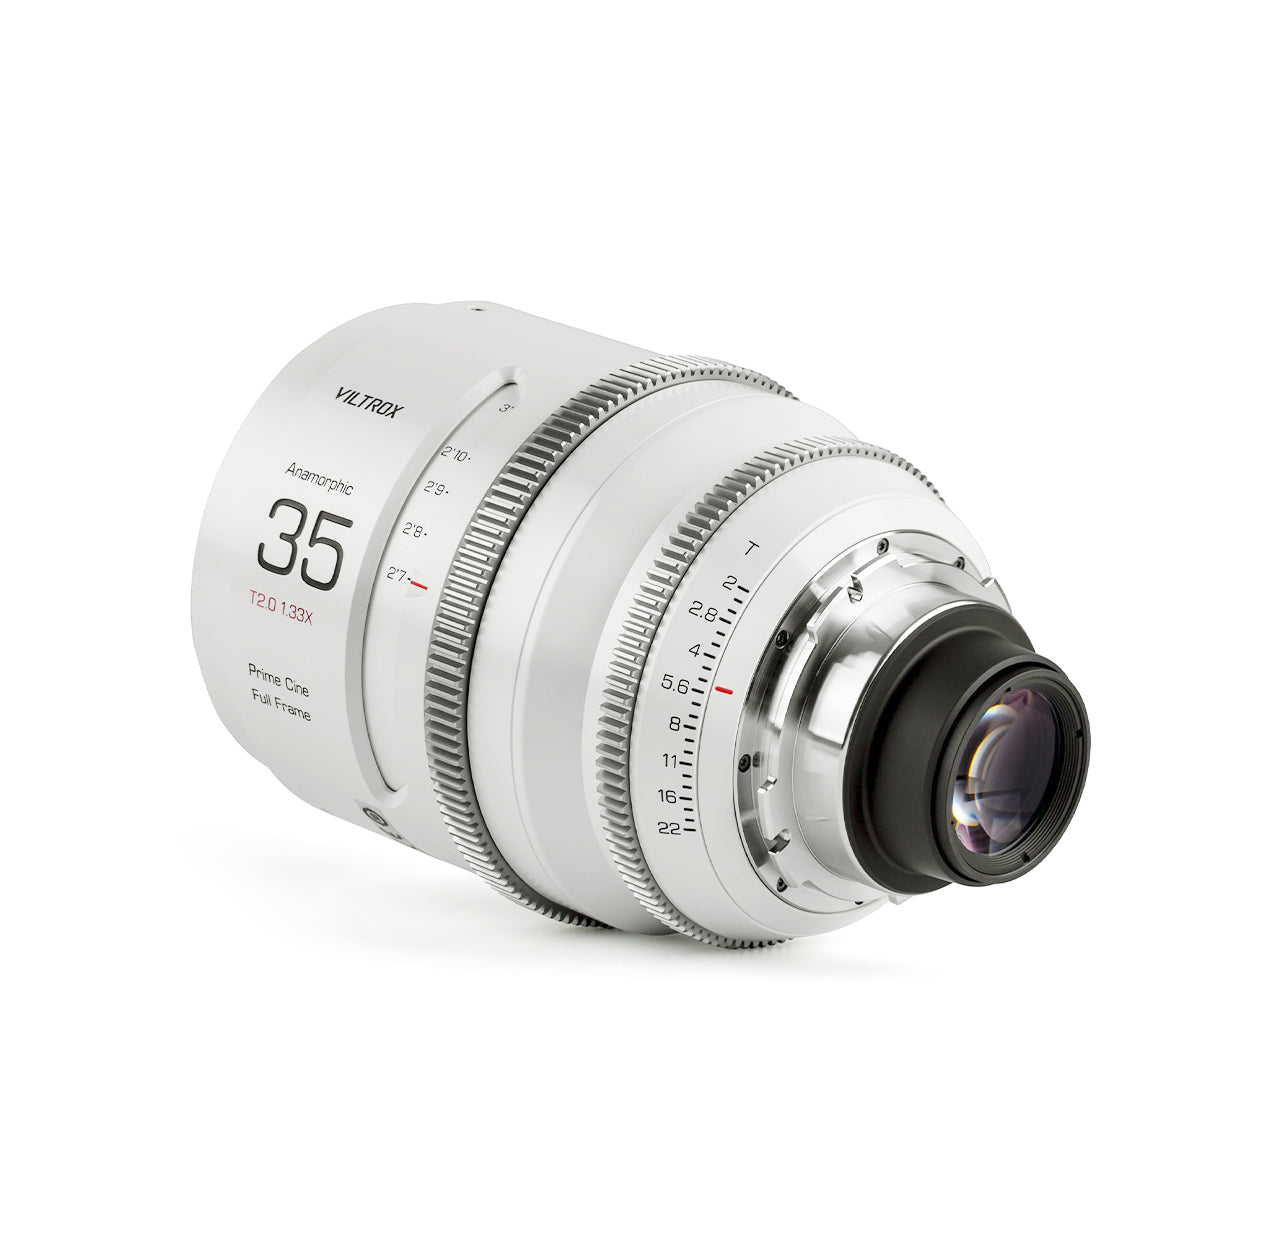 Viltrox EPIC Anamorphic 35mm/50mm/75mm T2.0 1.33X Cine Lens PL/E/L Mount